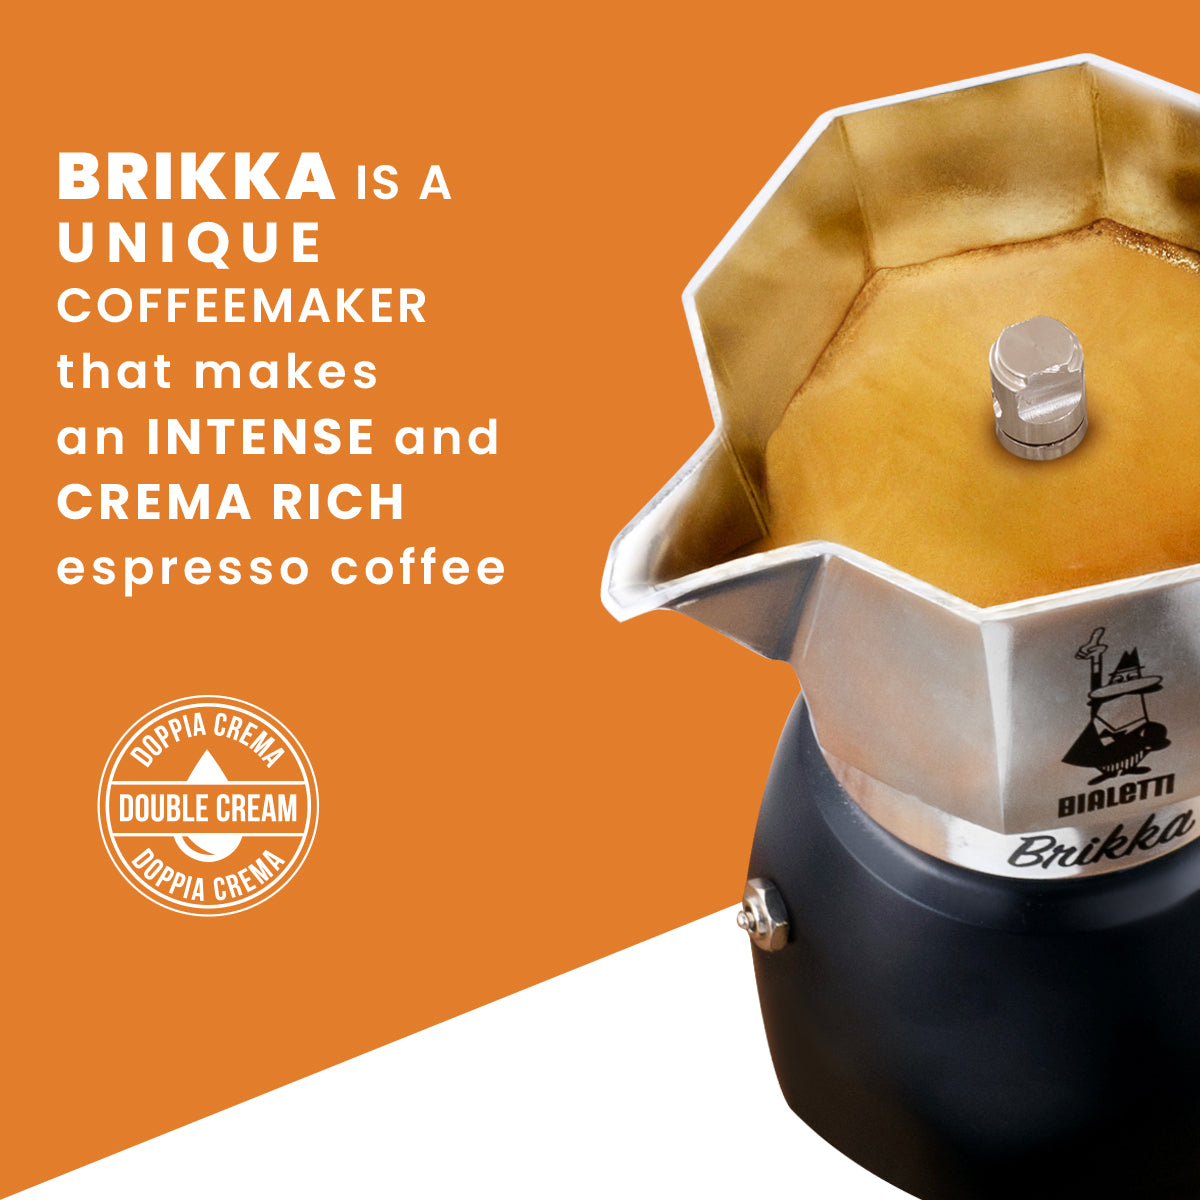 100% premium Bialetti Brikka Moka Pot- All Sizes